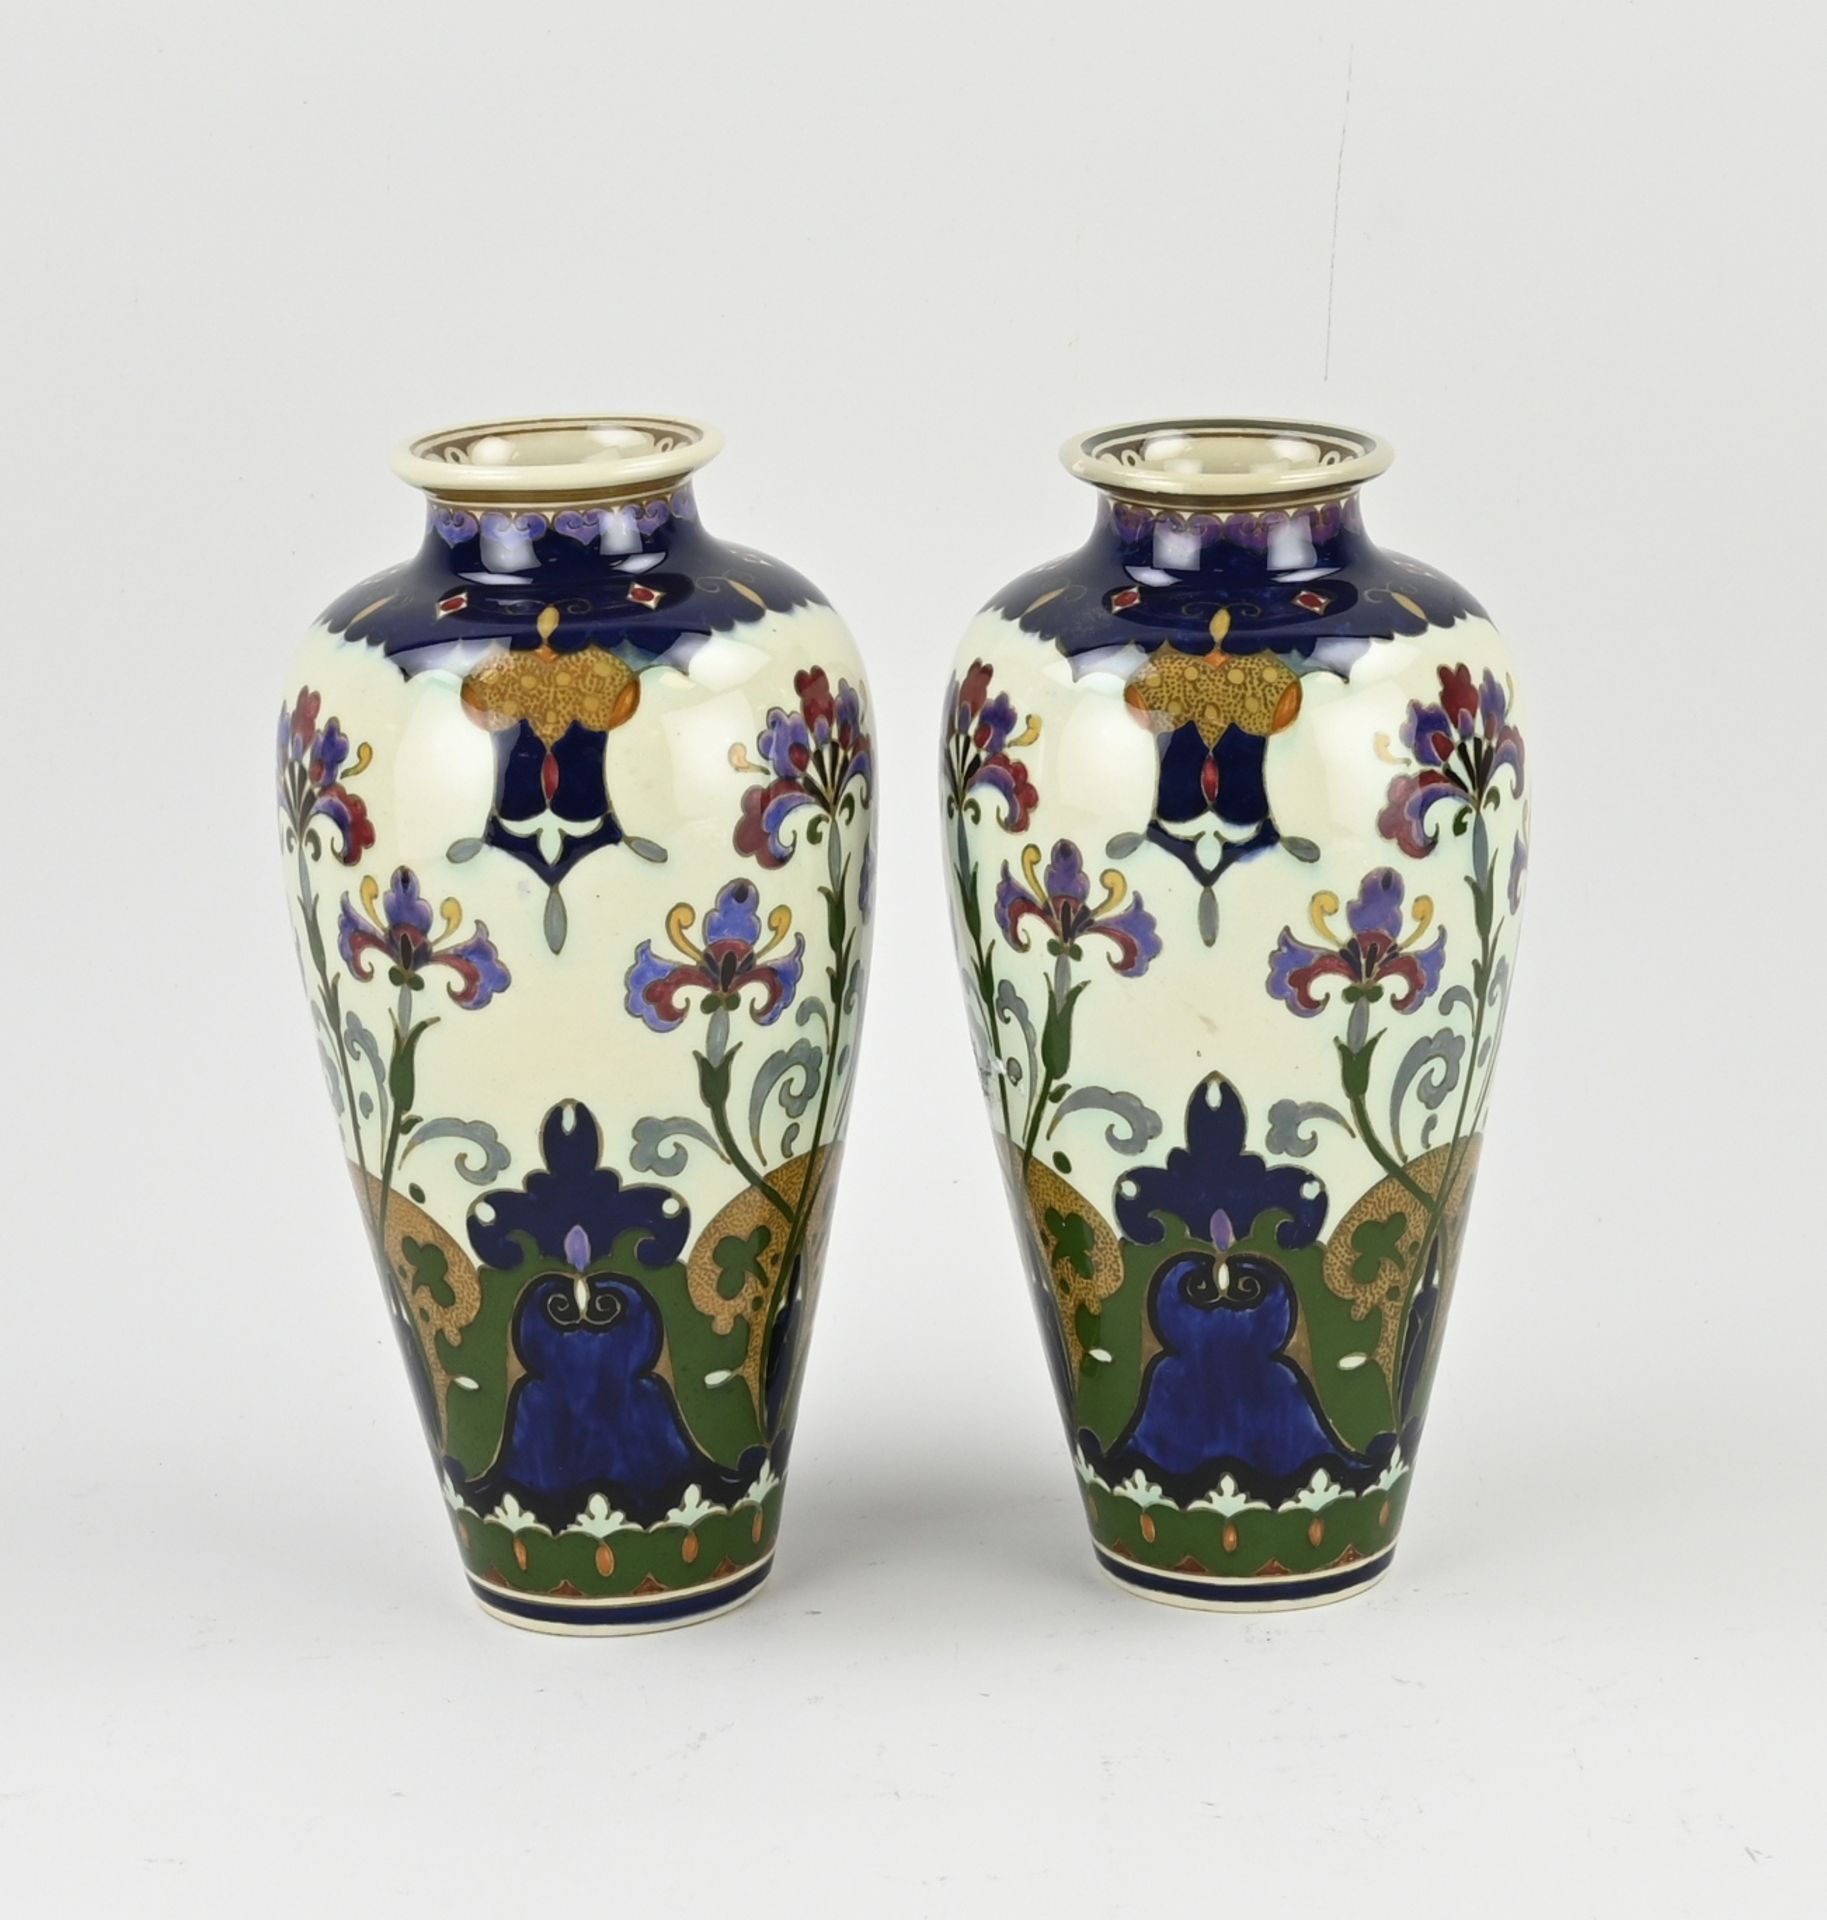 Two original antique Rozenburg vases, H 21 cm. - Image 2 of 3